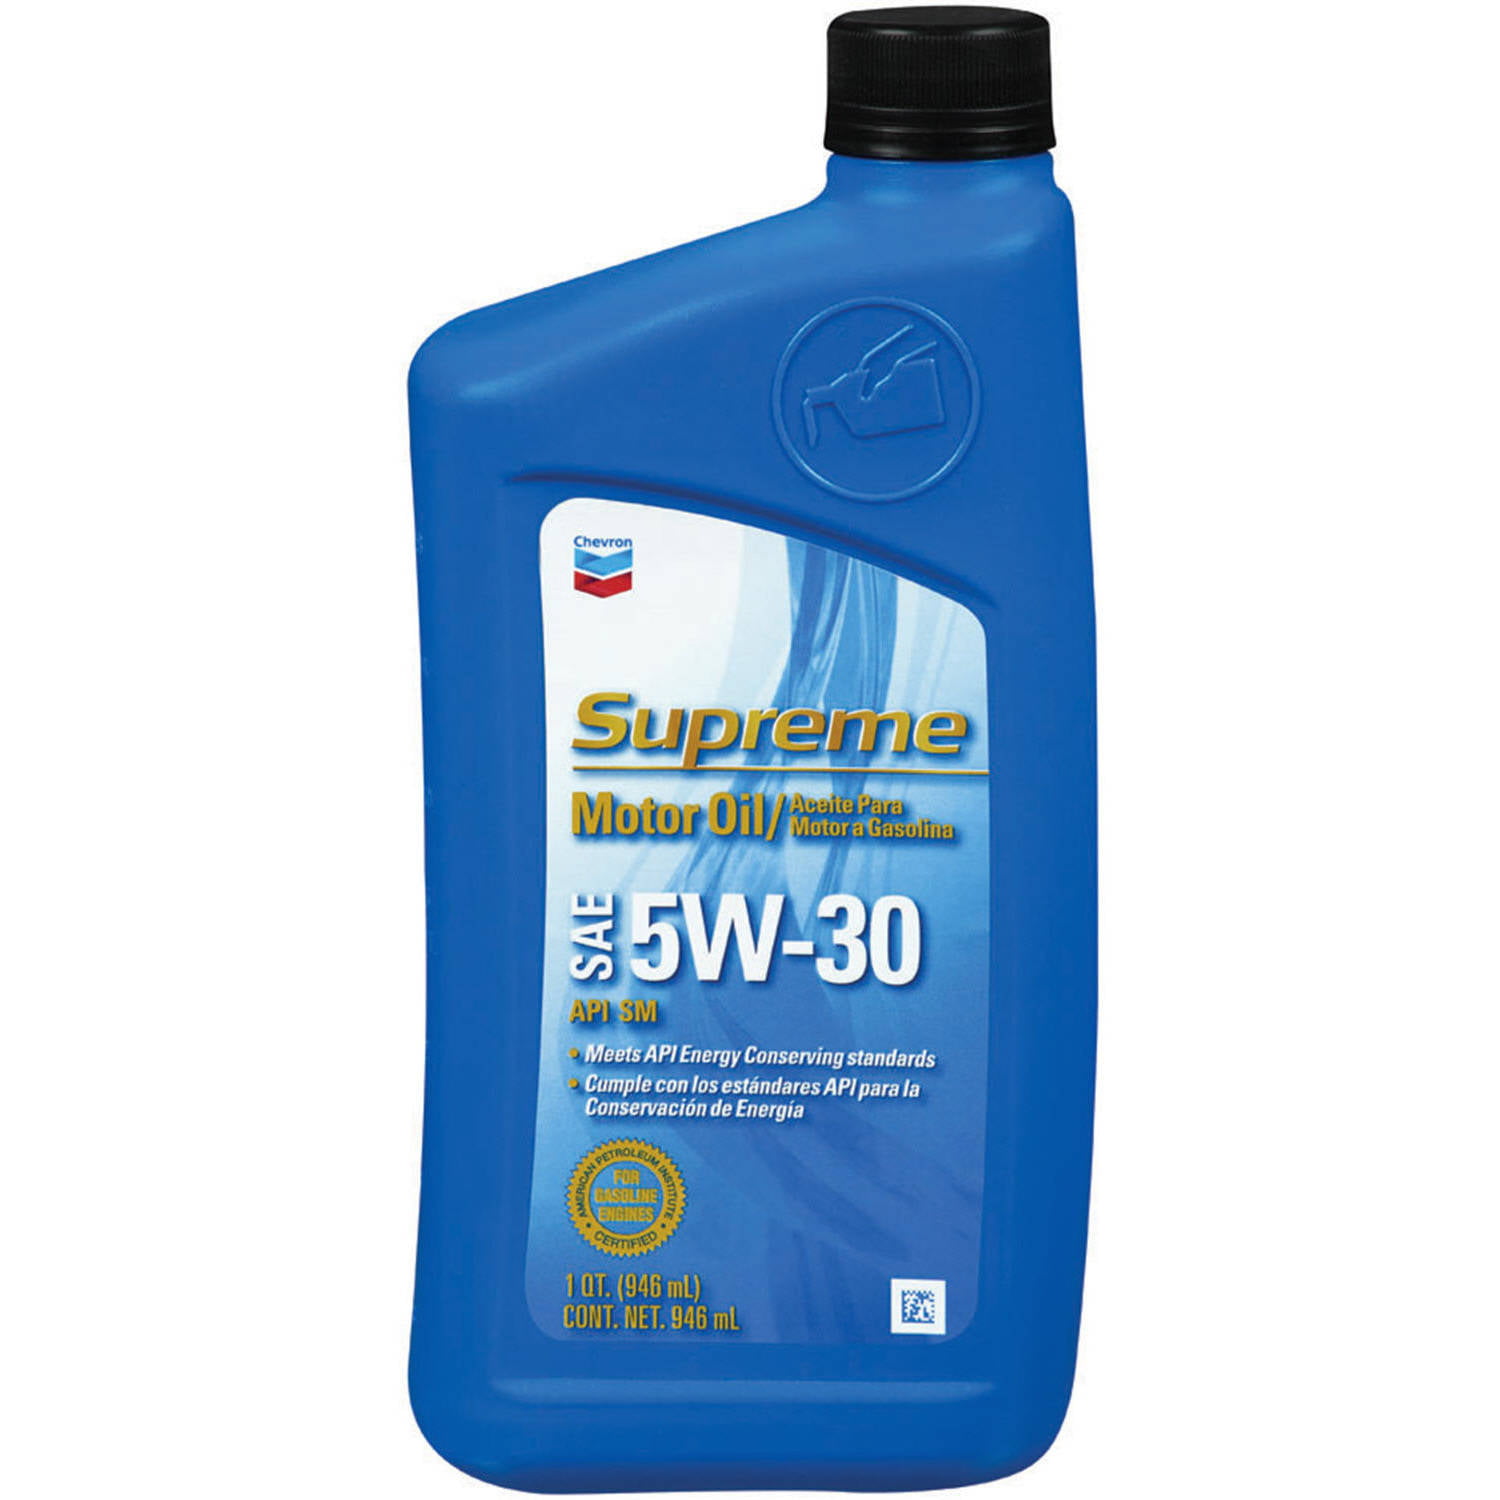 chevron-synthetic-blend-10w30-heavy-duty-motor-oil-walmart